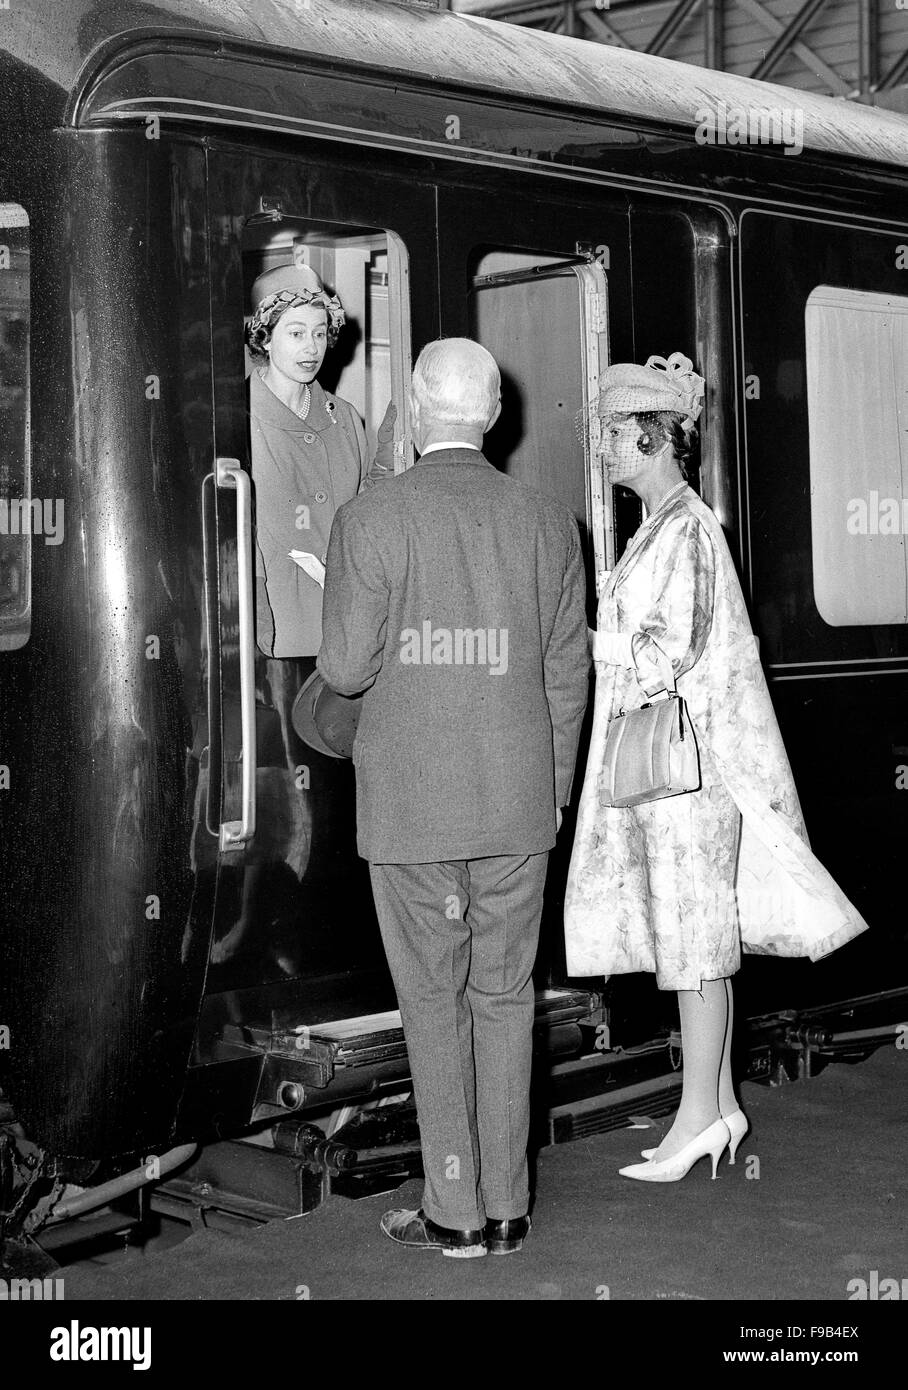 Queen Elizabeth arriva in treno reale a Coventry per visitare il Royal Show nel 1963 Foto Stock